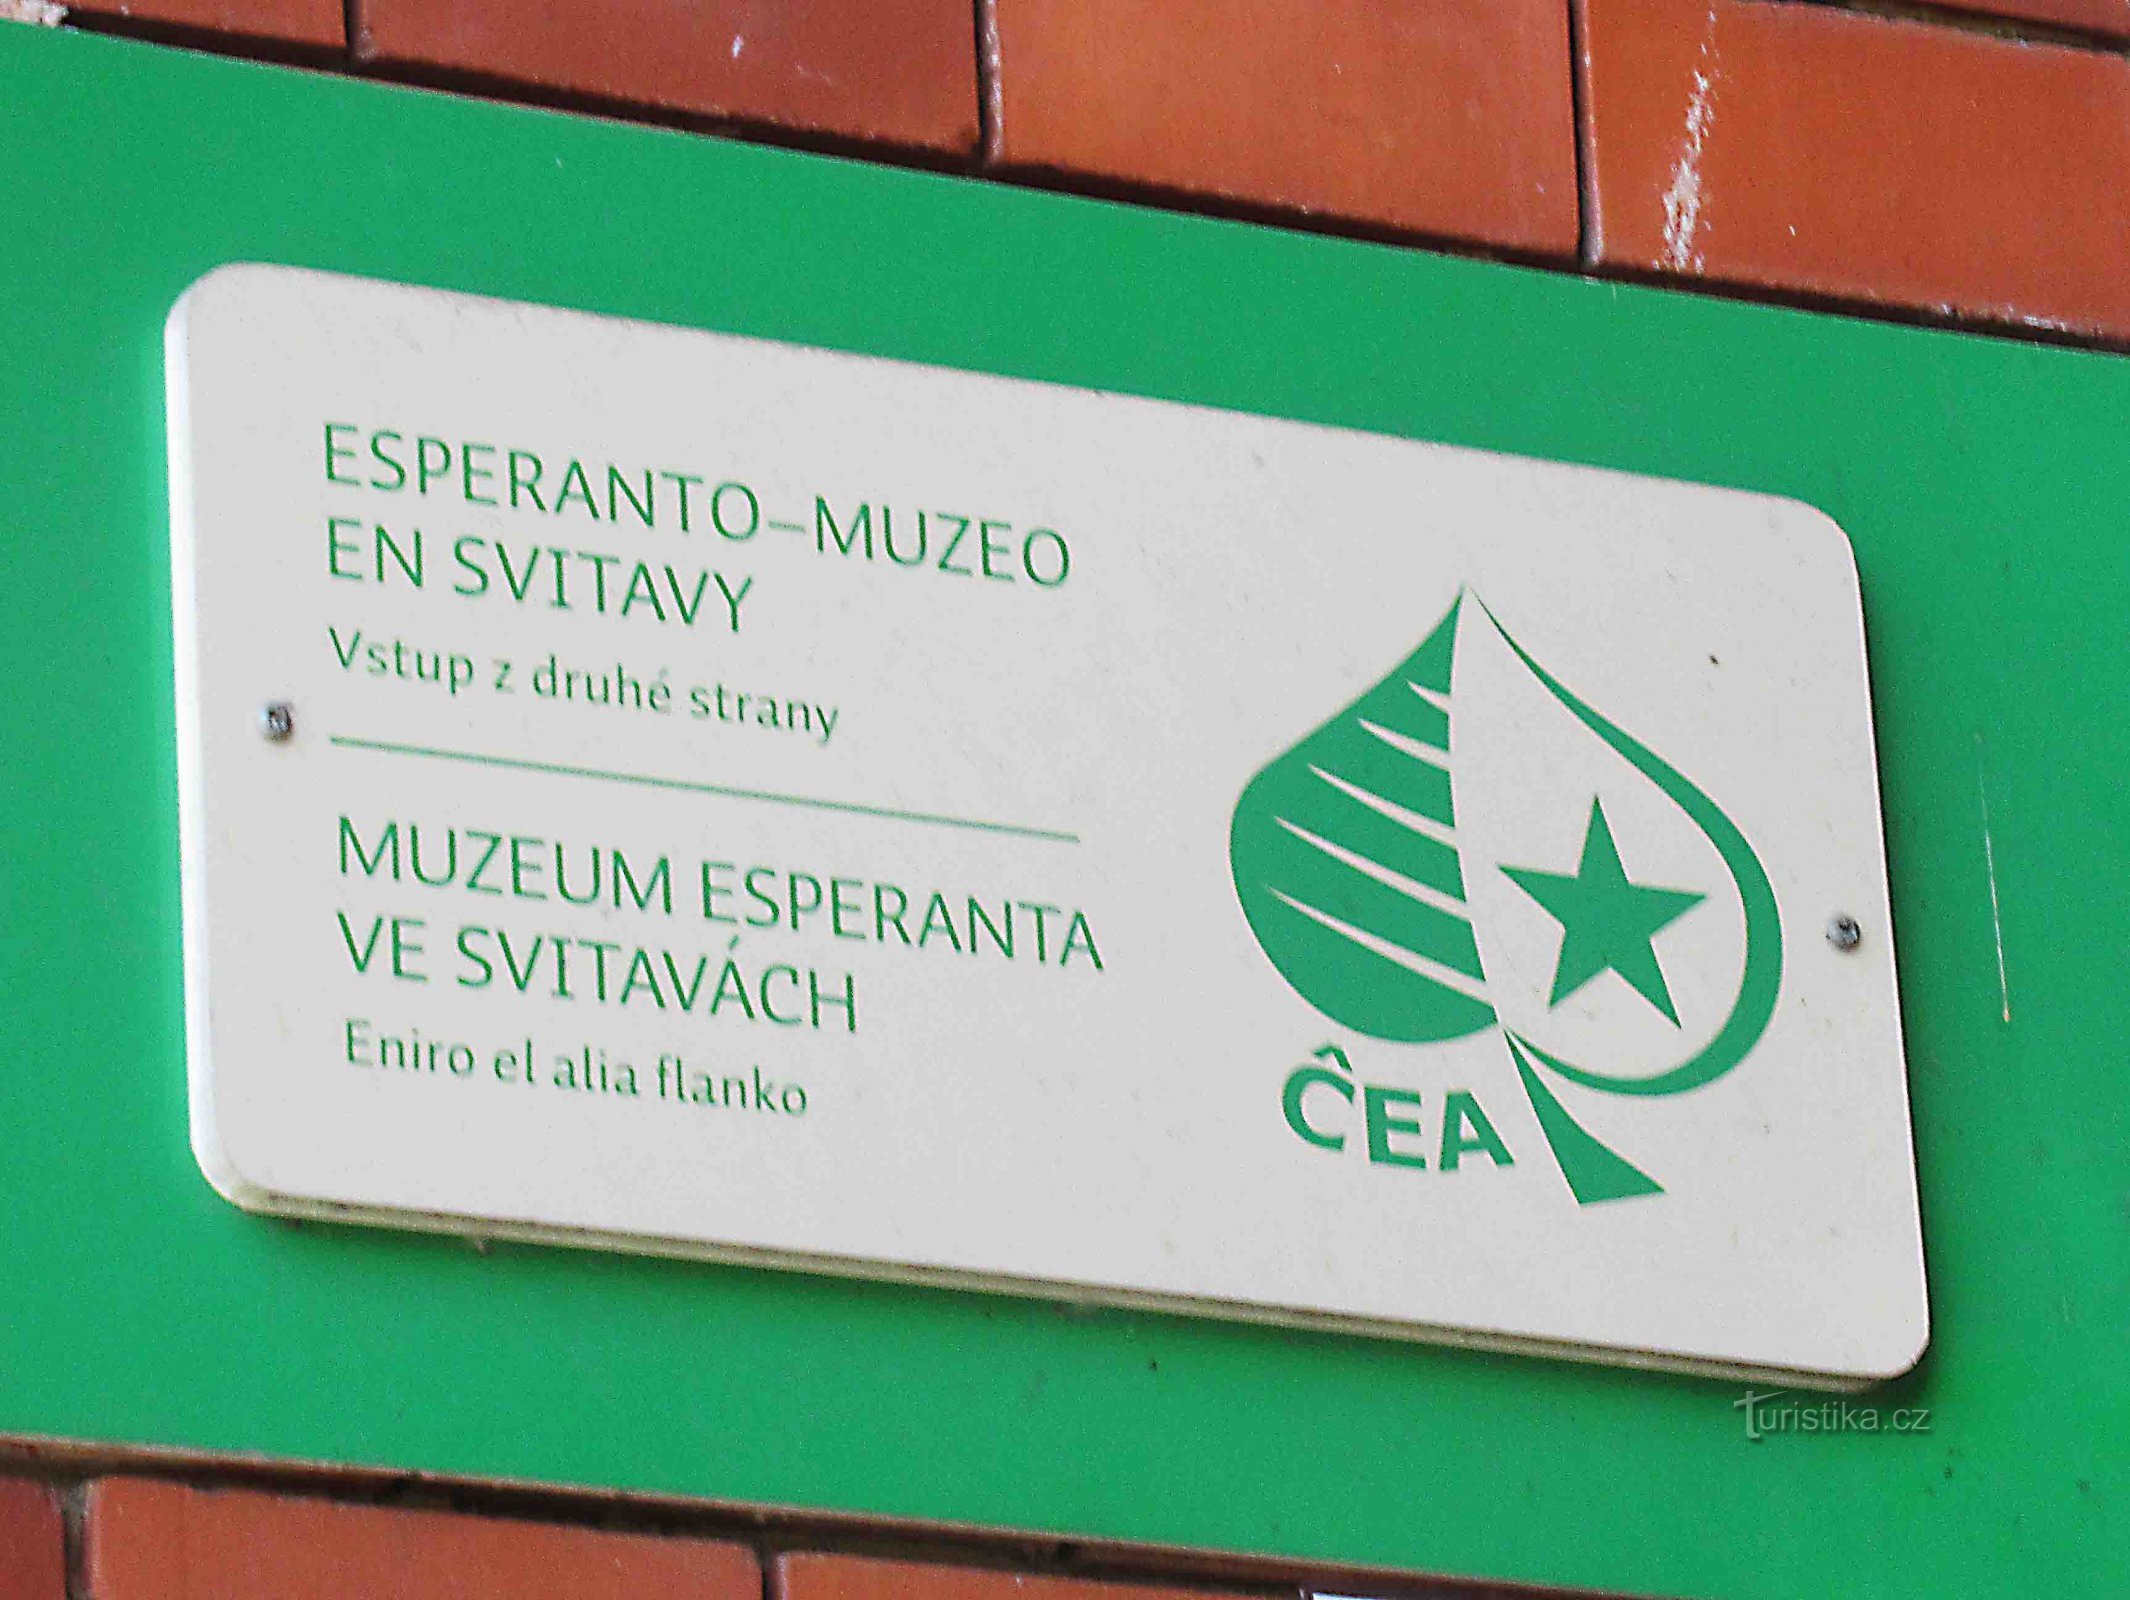 Museu do Esperanto Svitava